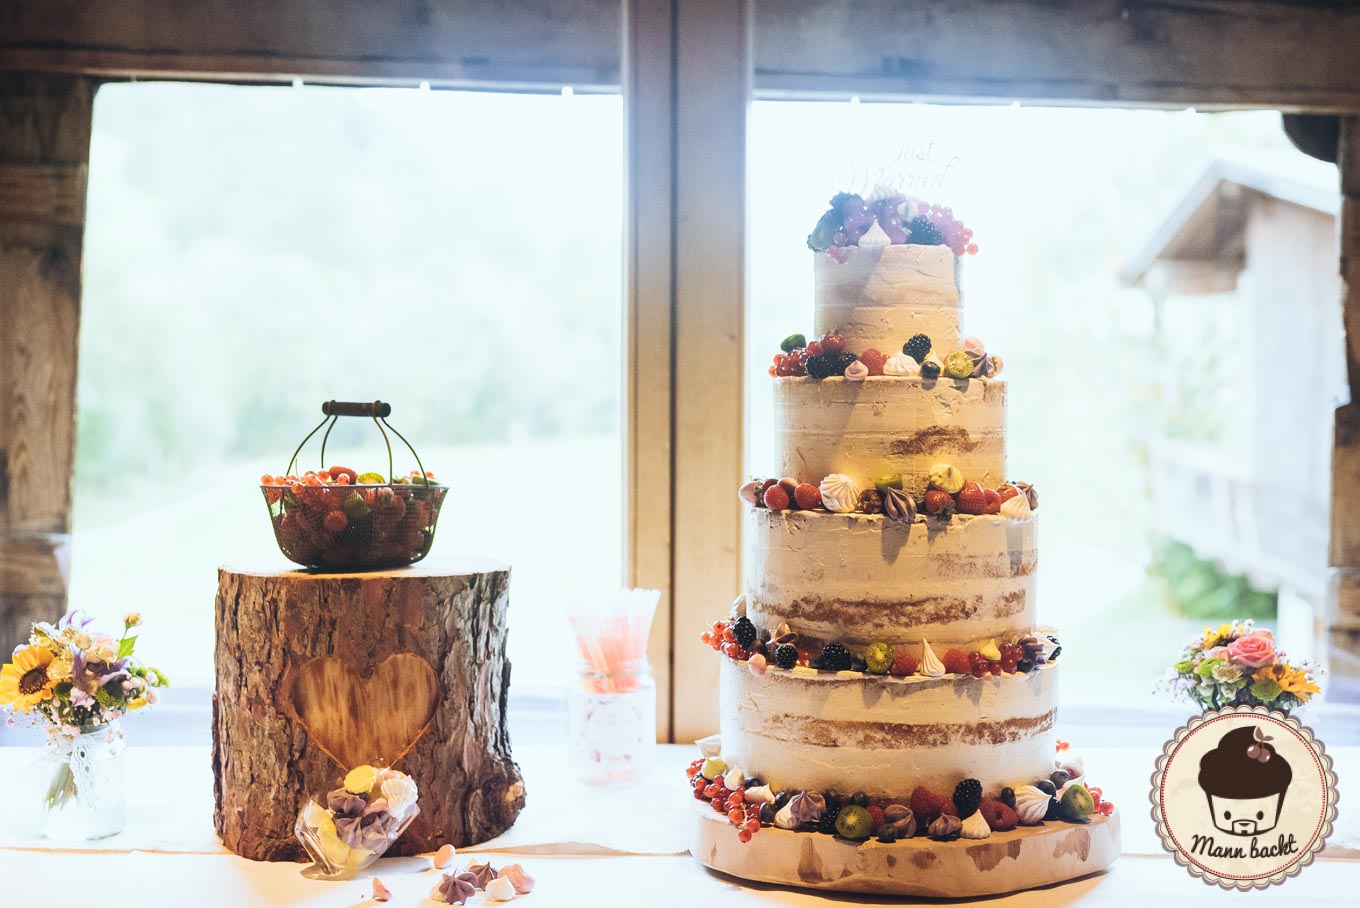 wedding-cake-hochzeitstorte-mann-backt-marian-moschen-naked-cake-8-von-10